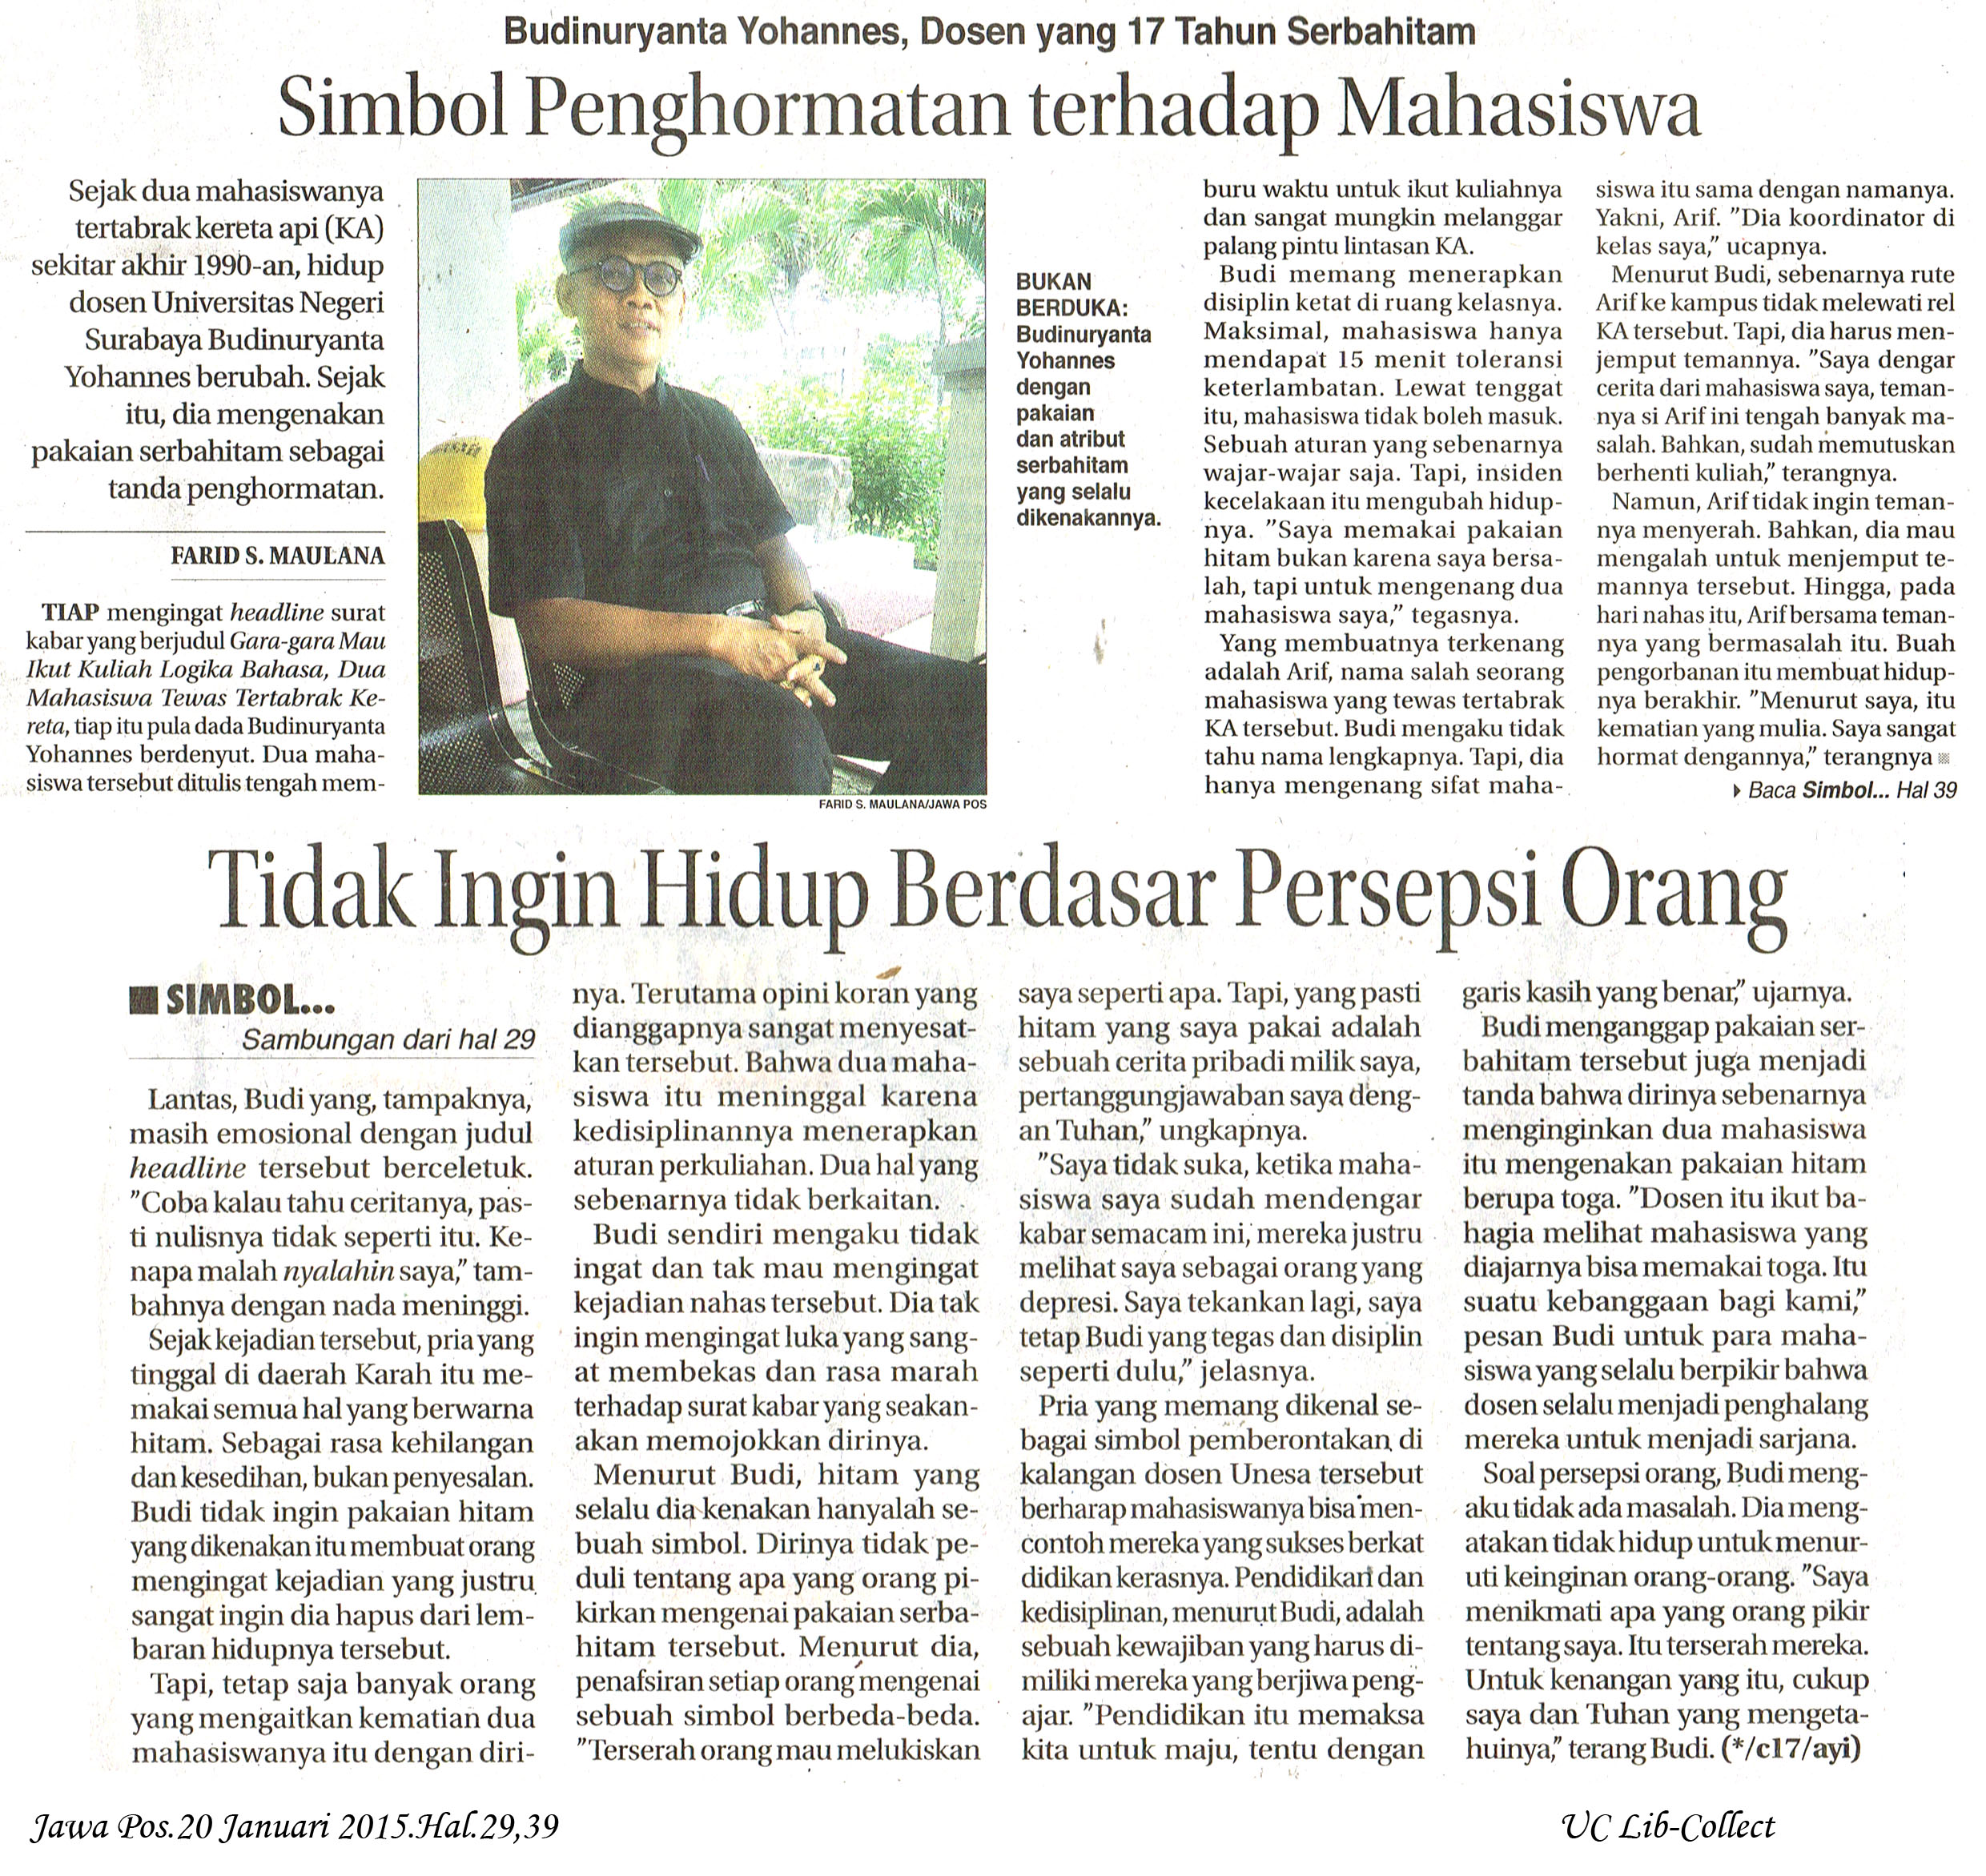 Simbol Penghormatan Terhadap Mahasiswa Jawa Pos 20 Januari 2015 Hal 29